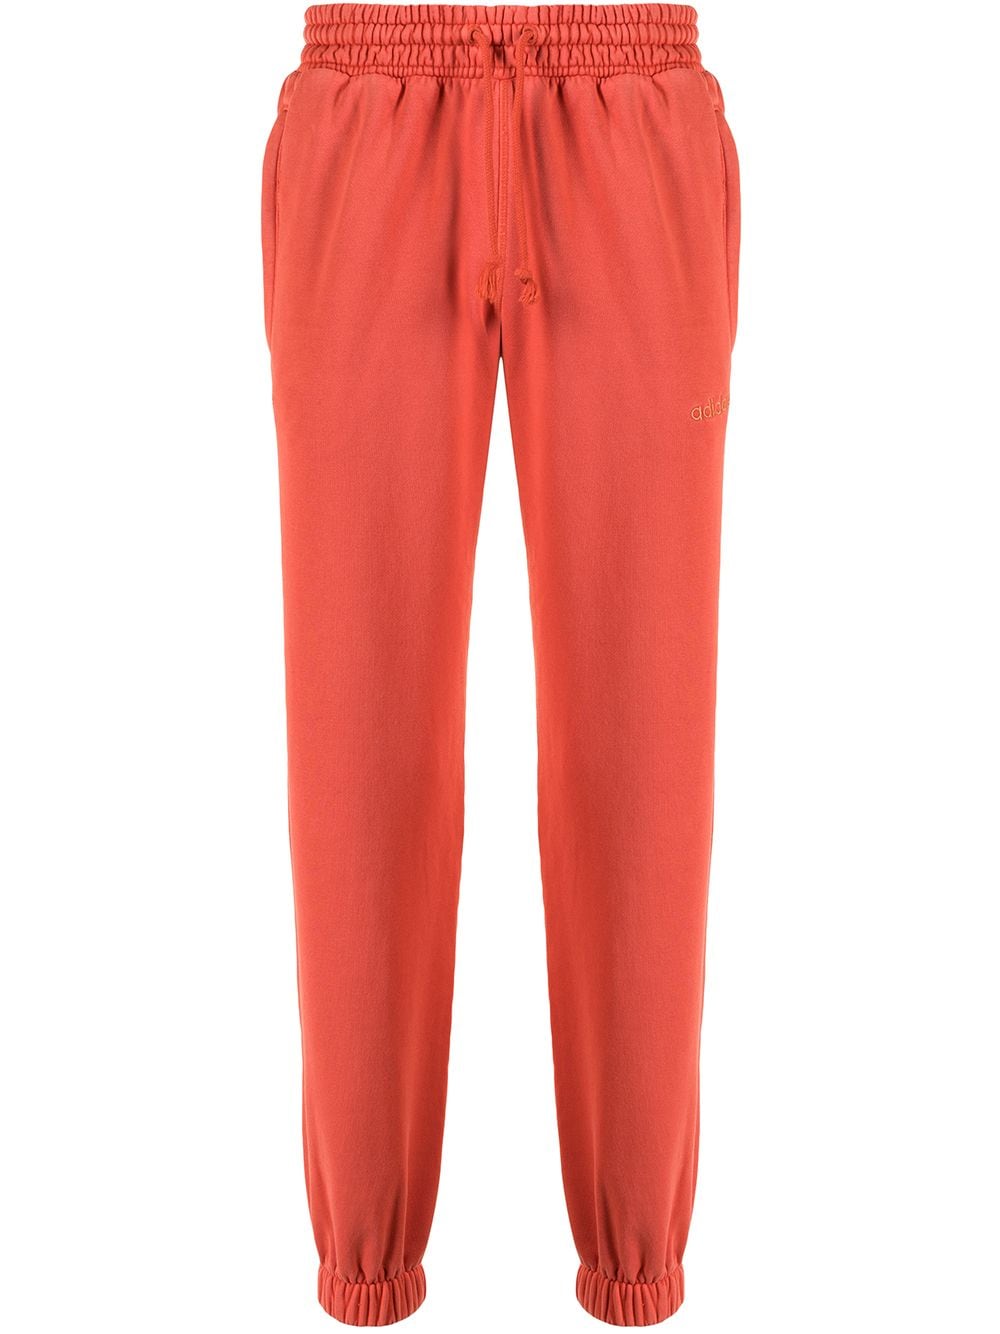 Adidas Originals Originals Dyed Track Trousers In Orange